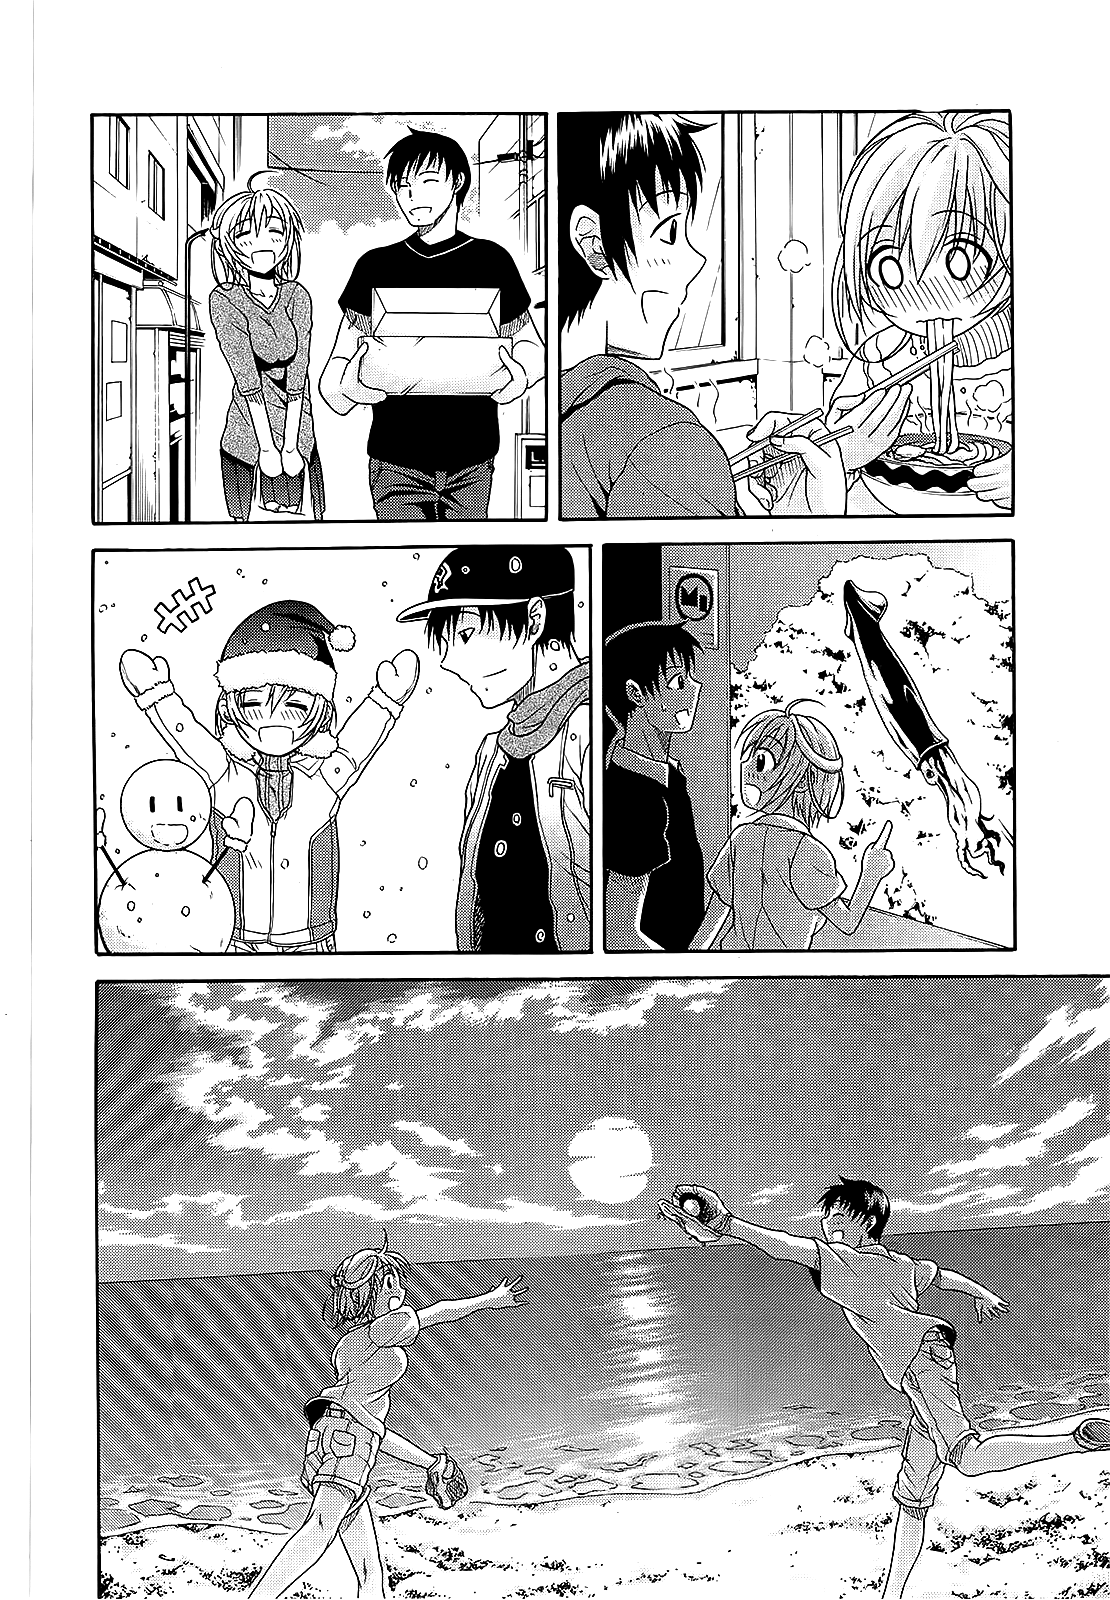 Ore no Kanojo to Osananajimi ga Shuraba Sugiru [Light Novel] - Page 15 -  AnimeSuki Forum